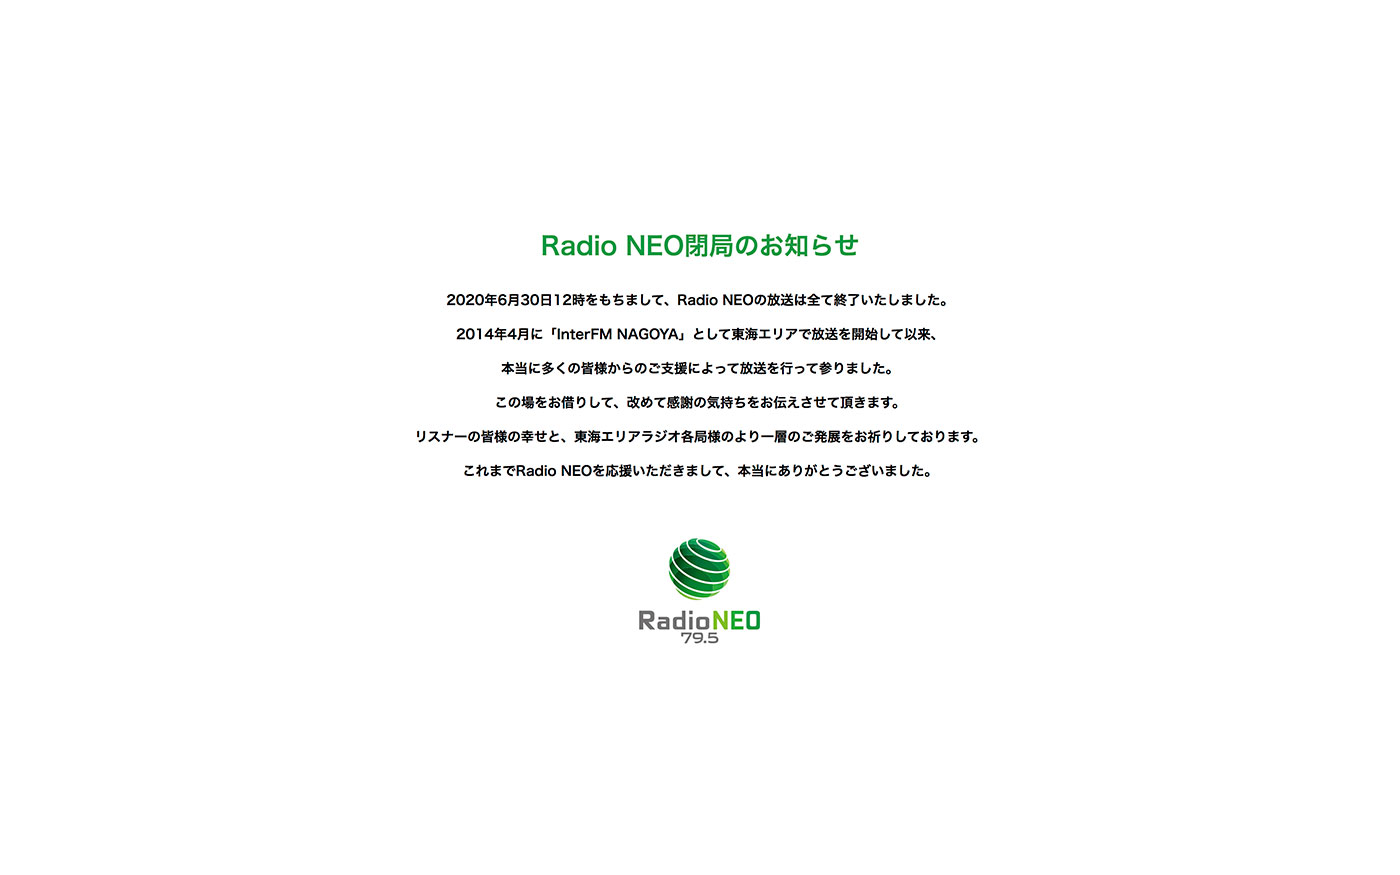 閉局したRadio NEO